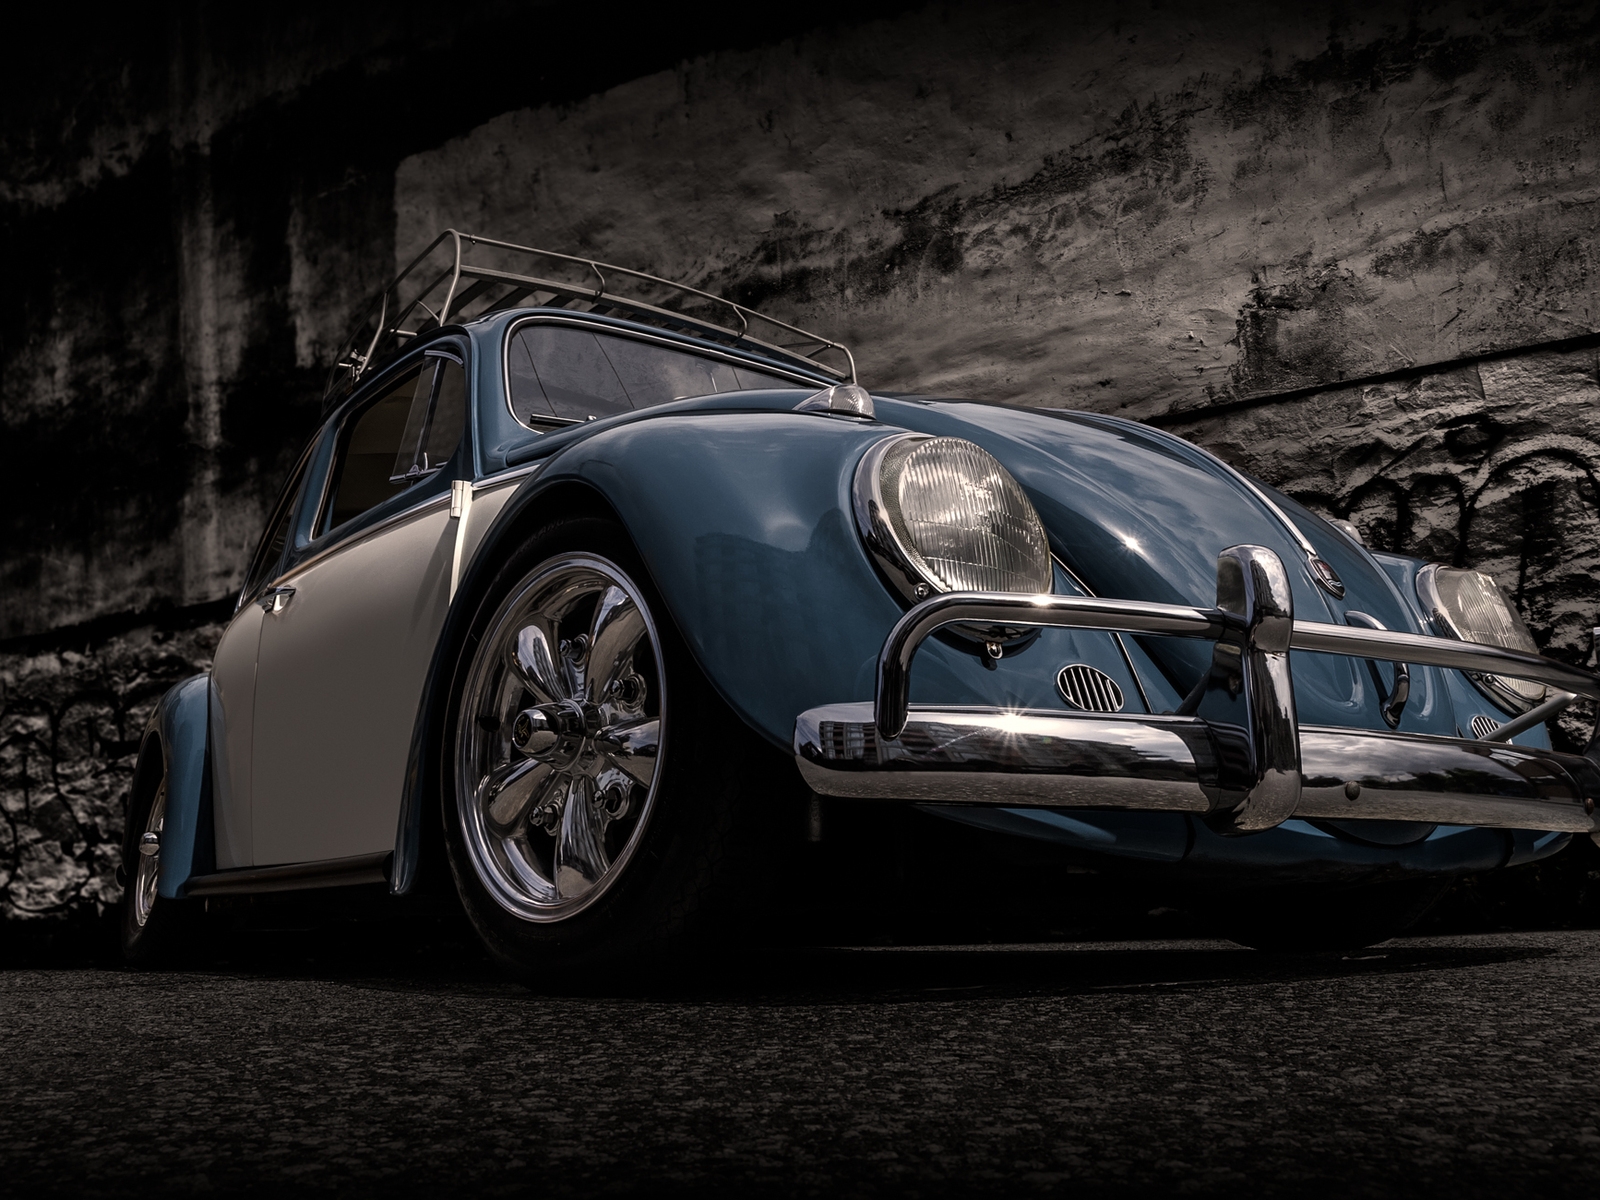 Volkswagen Beetle Retro for 1600 x 1200 resolution